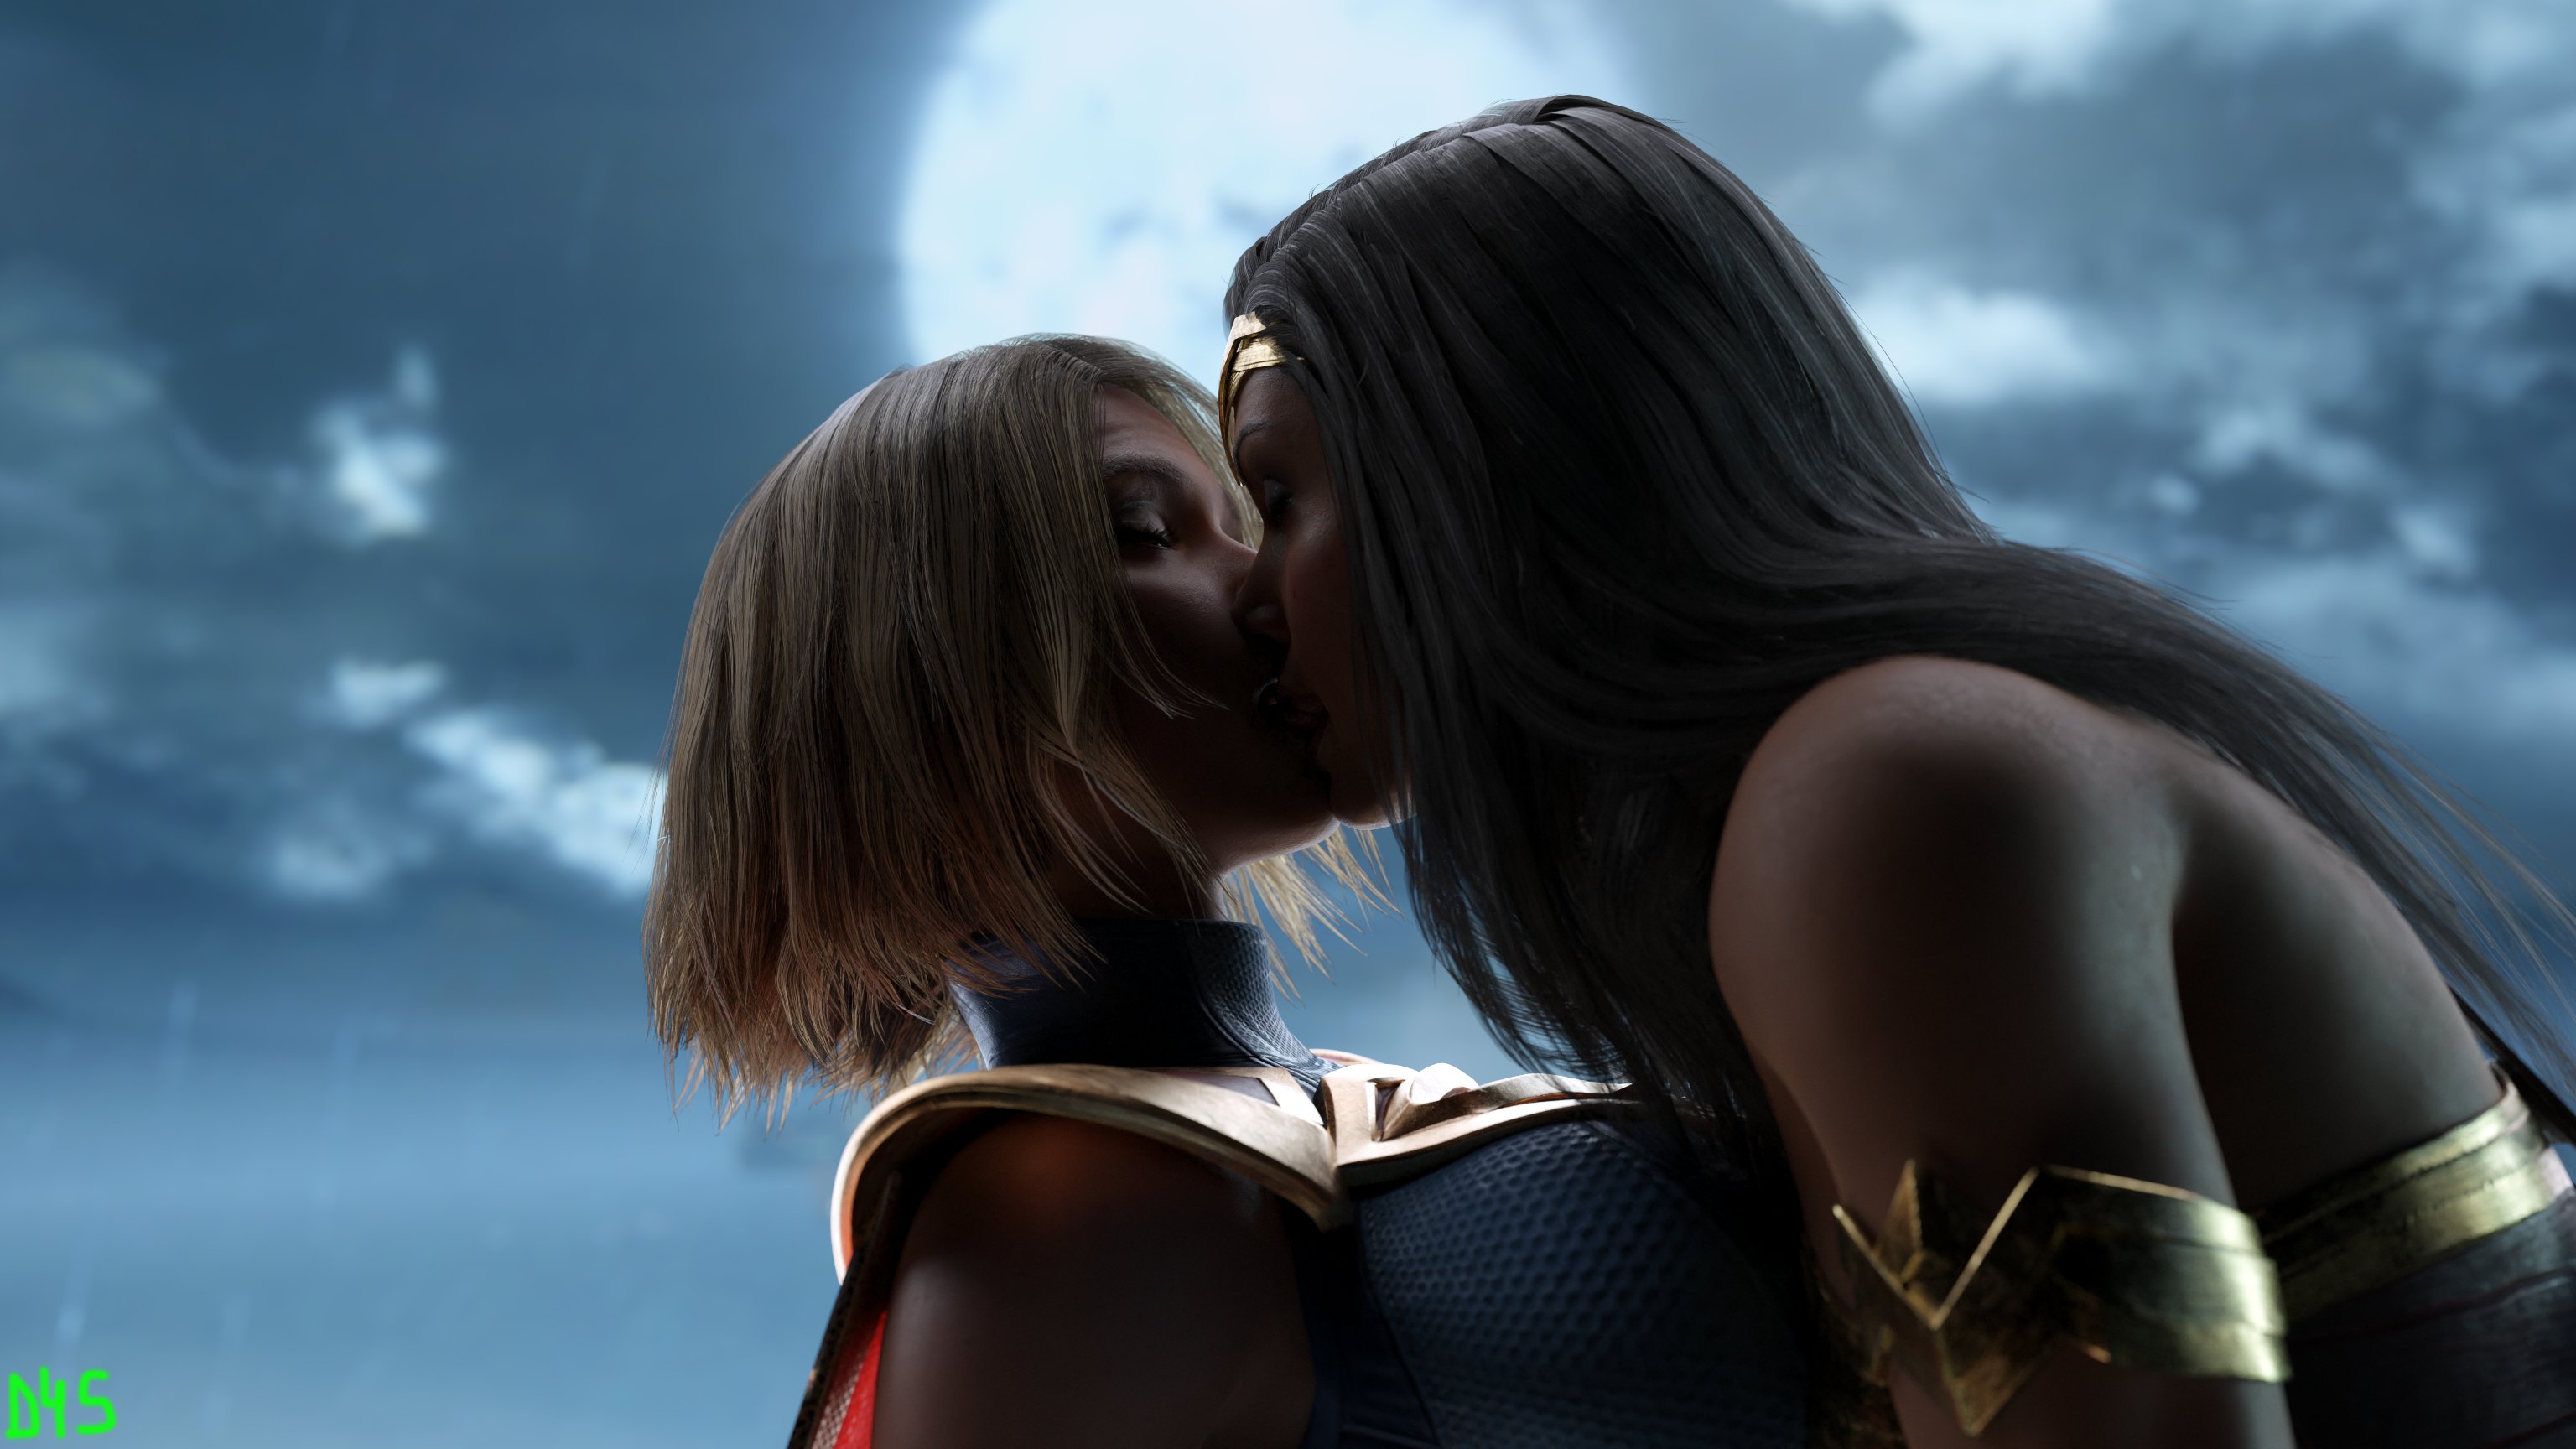 Supergirl lesbian kiss hq